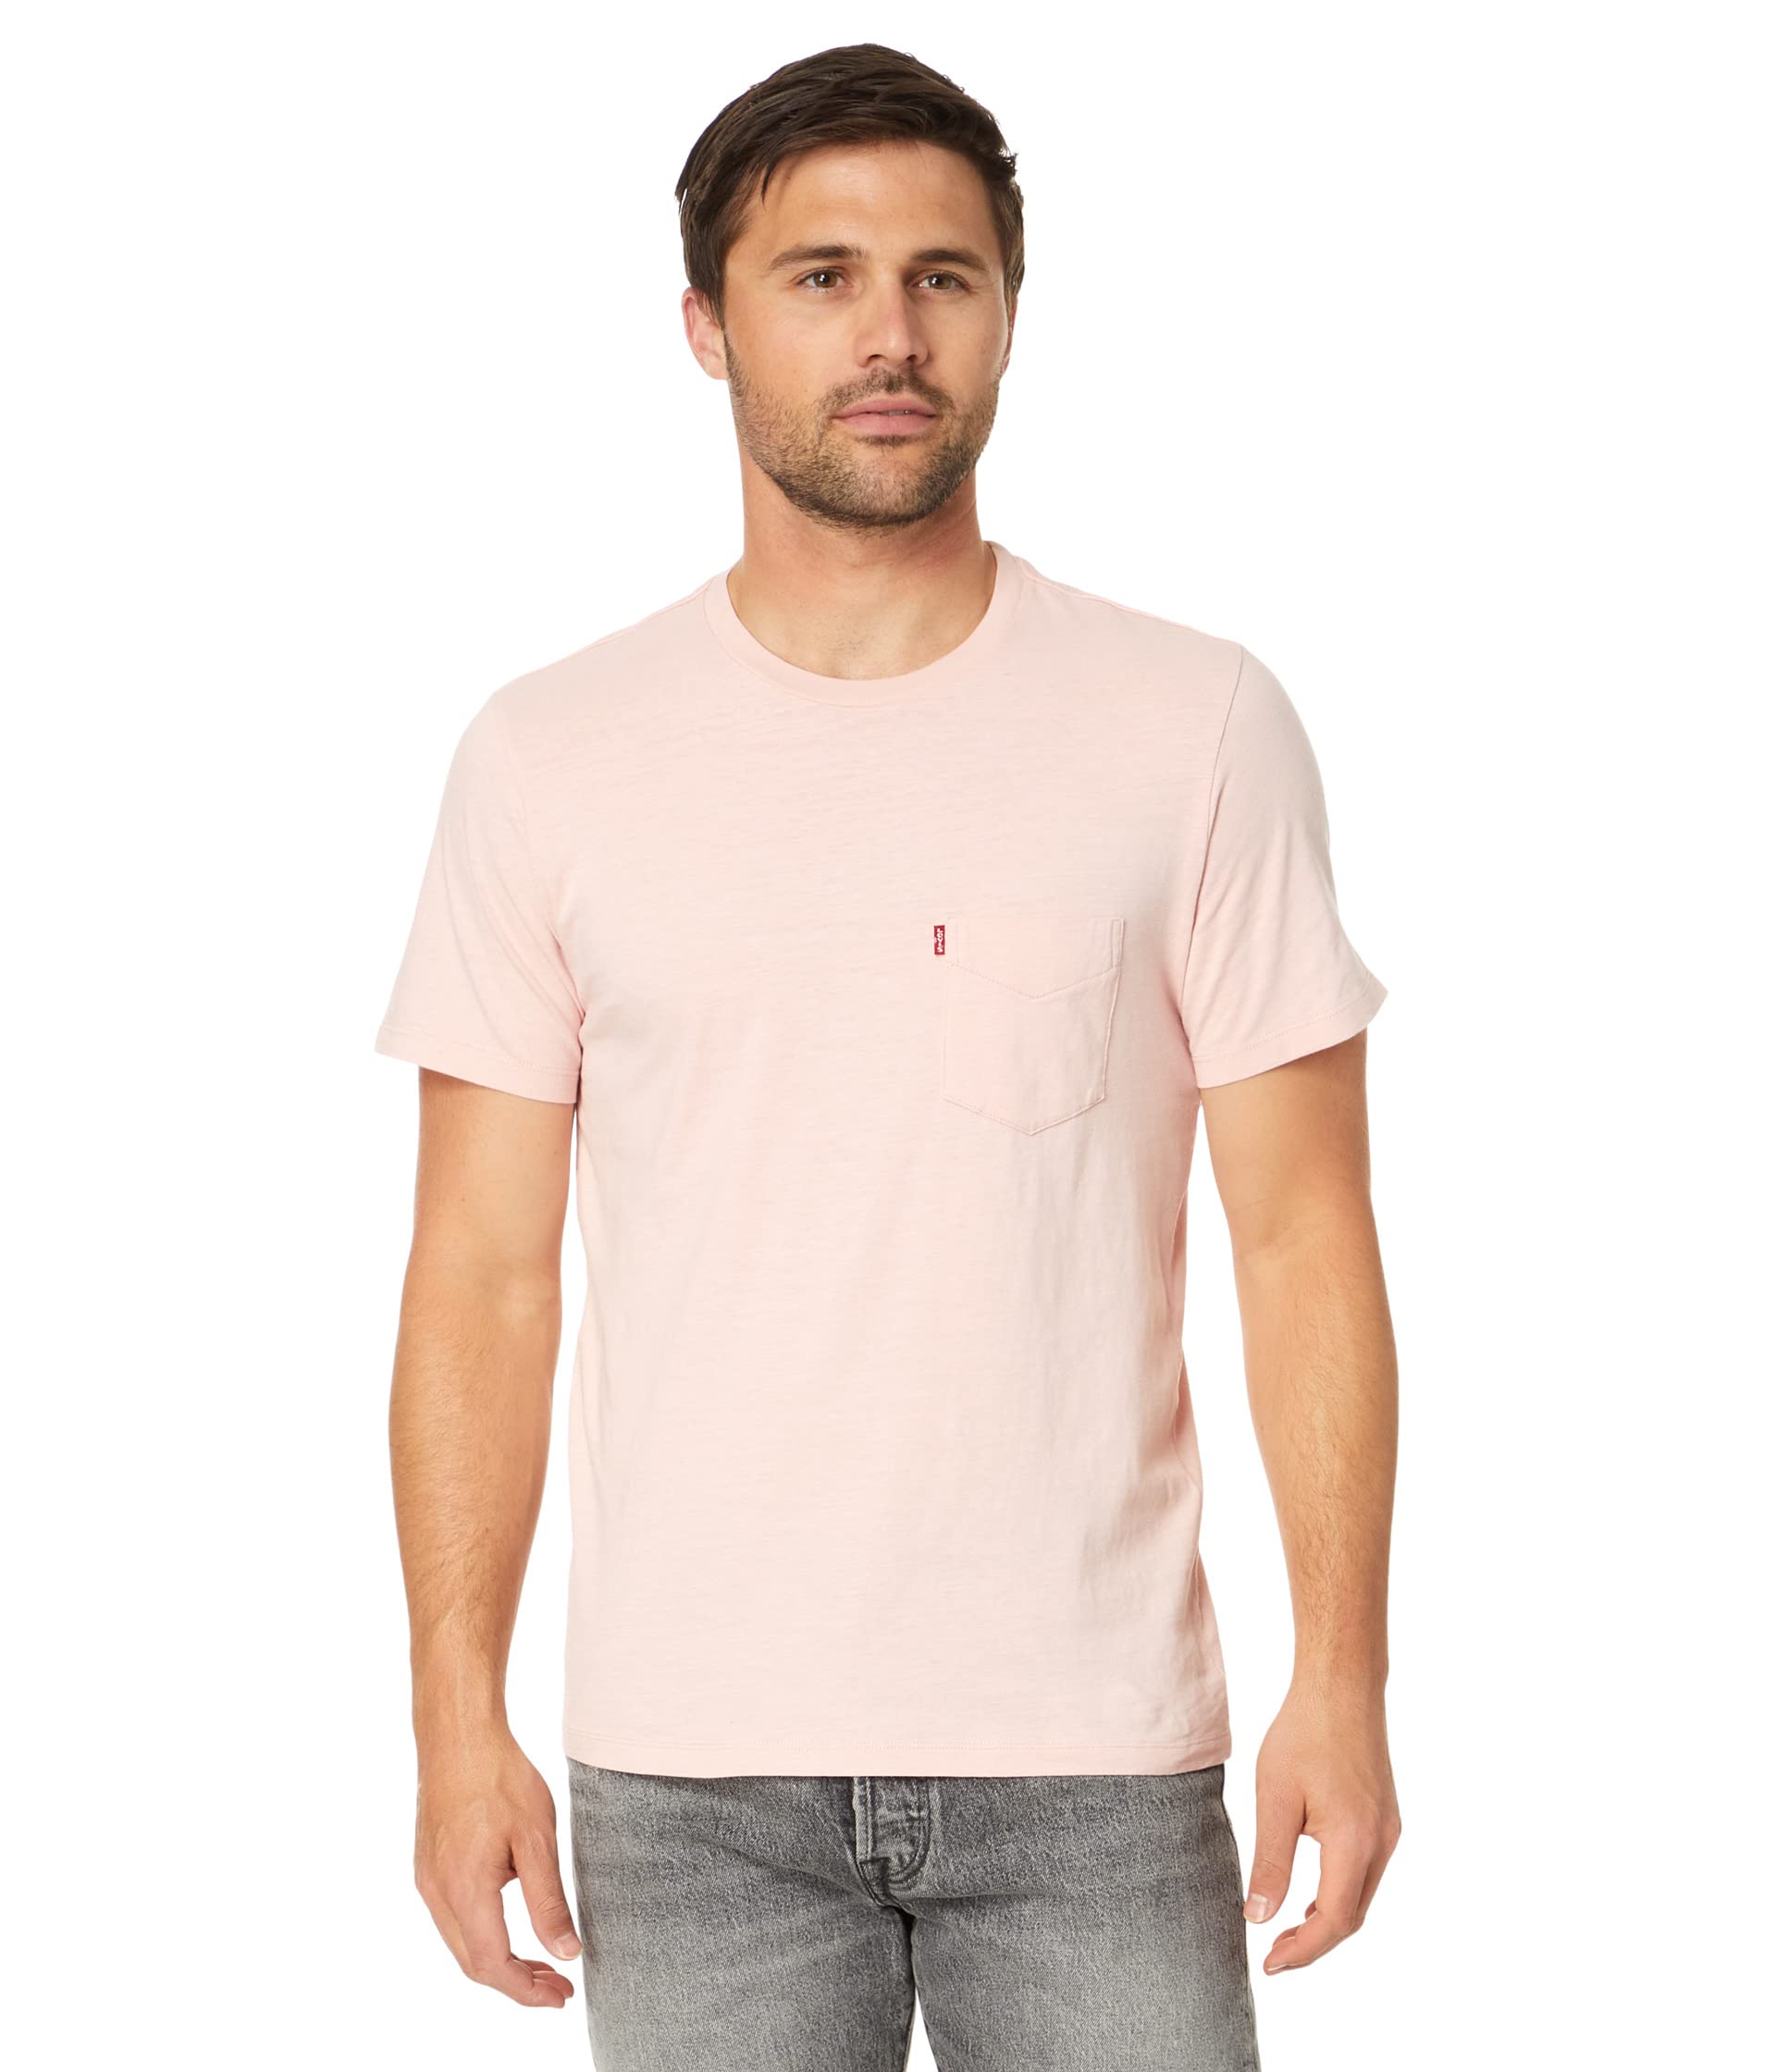 Классическая футболка с короткими рукавами и карманами Levi's®